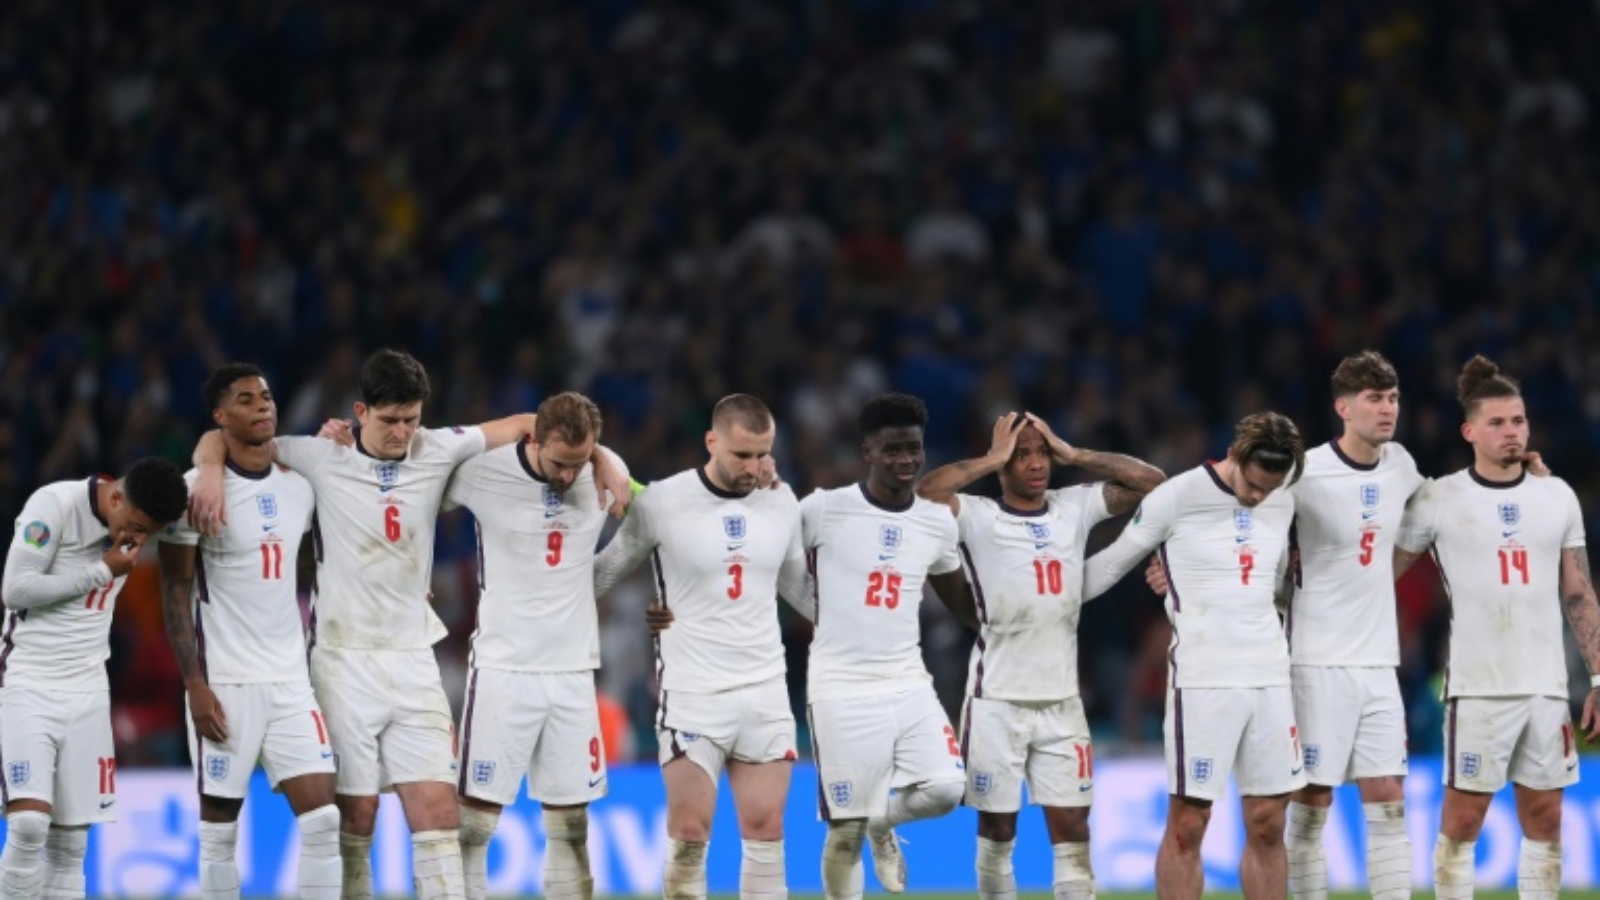 منتخب إنكلترا يطمح إلى استعادة التوازن بعد الخسارة في نهائي كأس أوروبا 2020 بركلات الترجيح.